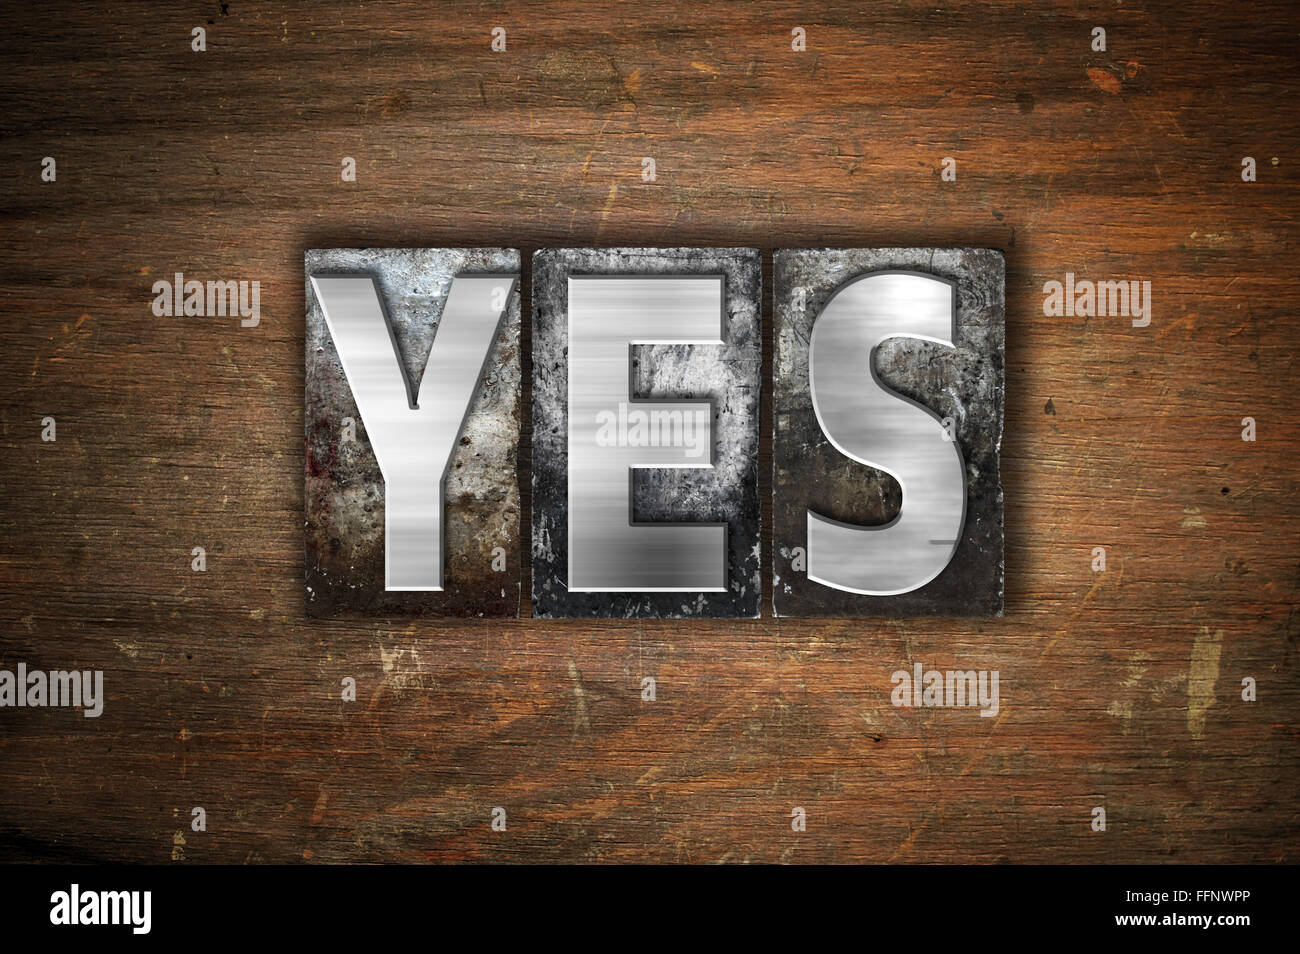 La palabra "Sí" escrito en vintage tipografía metálica sobre un fondo de madera envejecida. Foto de stock